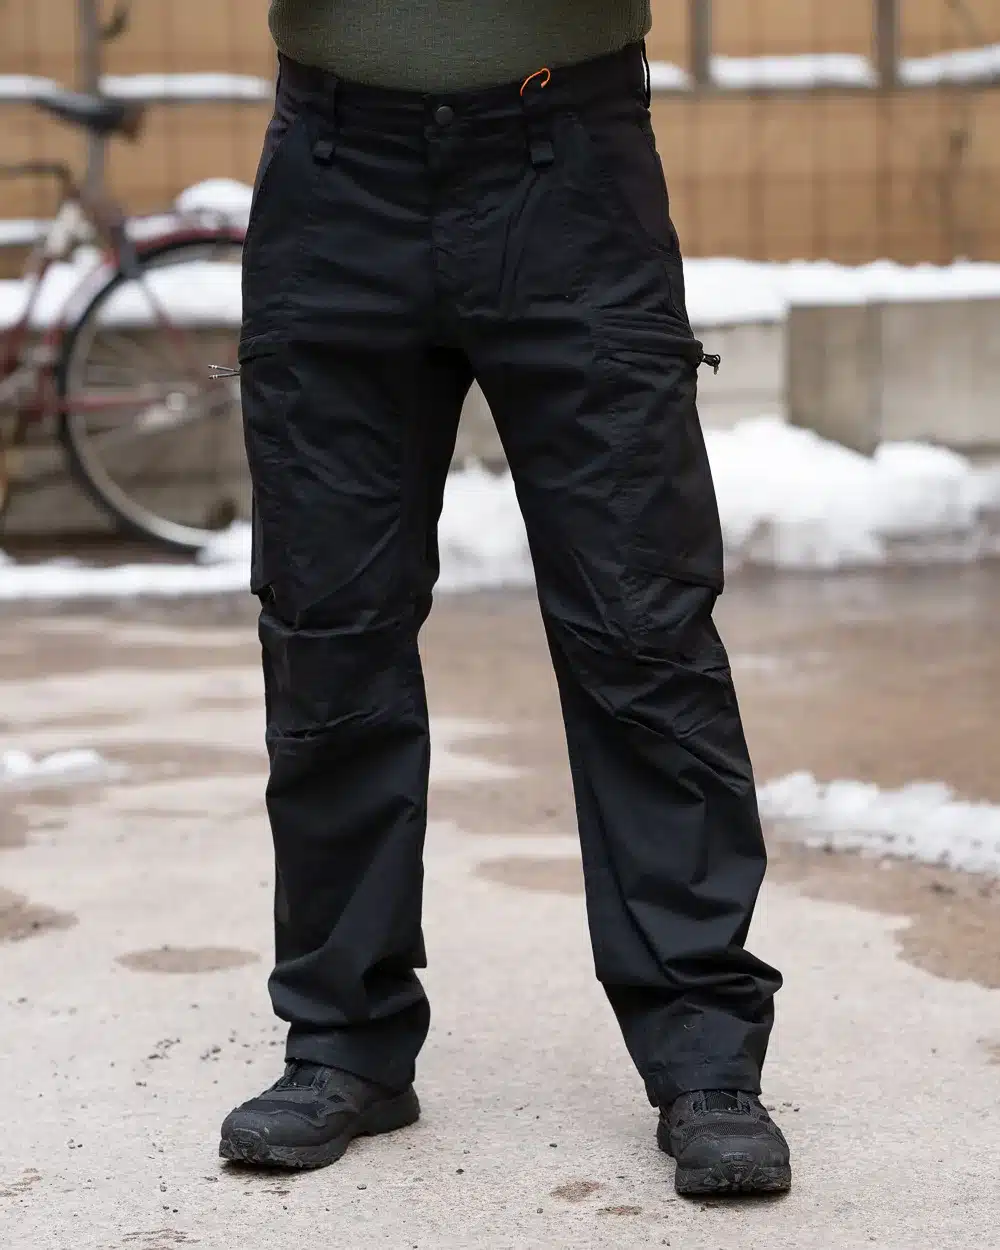 Beretta LowPro Jousto Reisitaskuhousut Musta, 98% puuvilla stretch kangasta, uusin taktinen reisitaskuhousu mallimme, miesten retkeily- ja työhousut joissa on elastinen vyötärökiristys, useita erikokoisia taskuja, kestävät ja super joustavat materiaalit, valmistaja Beretta - Italia.